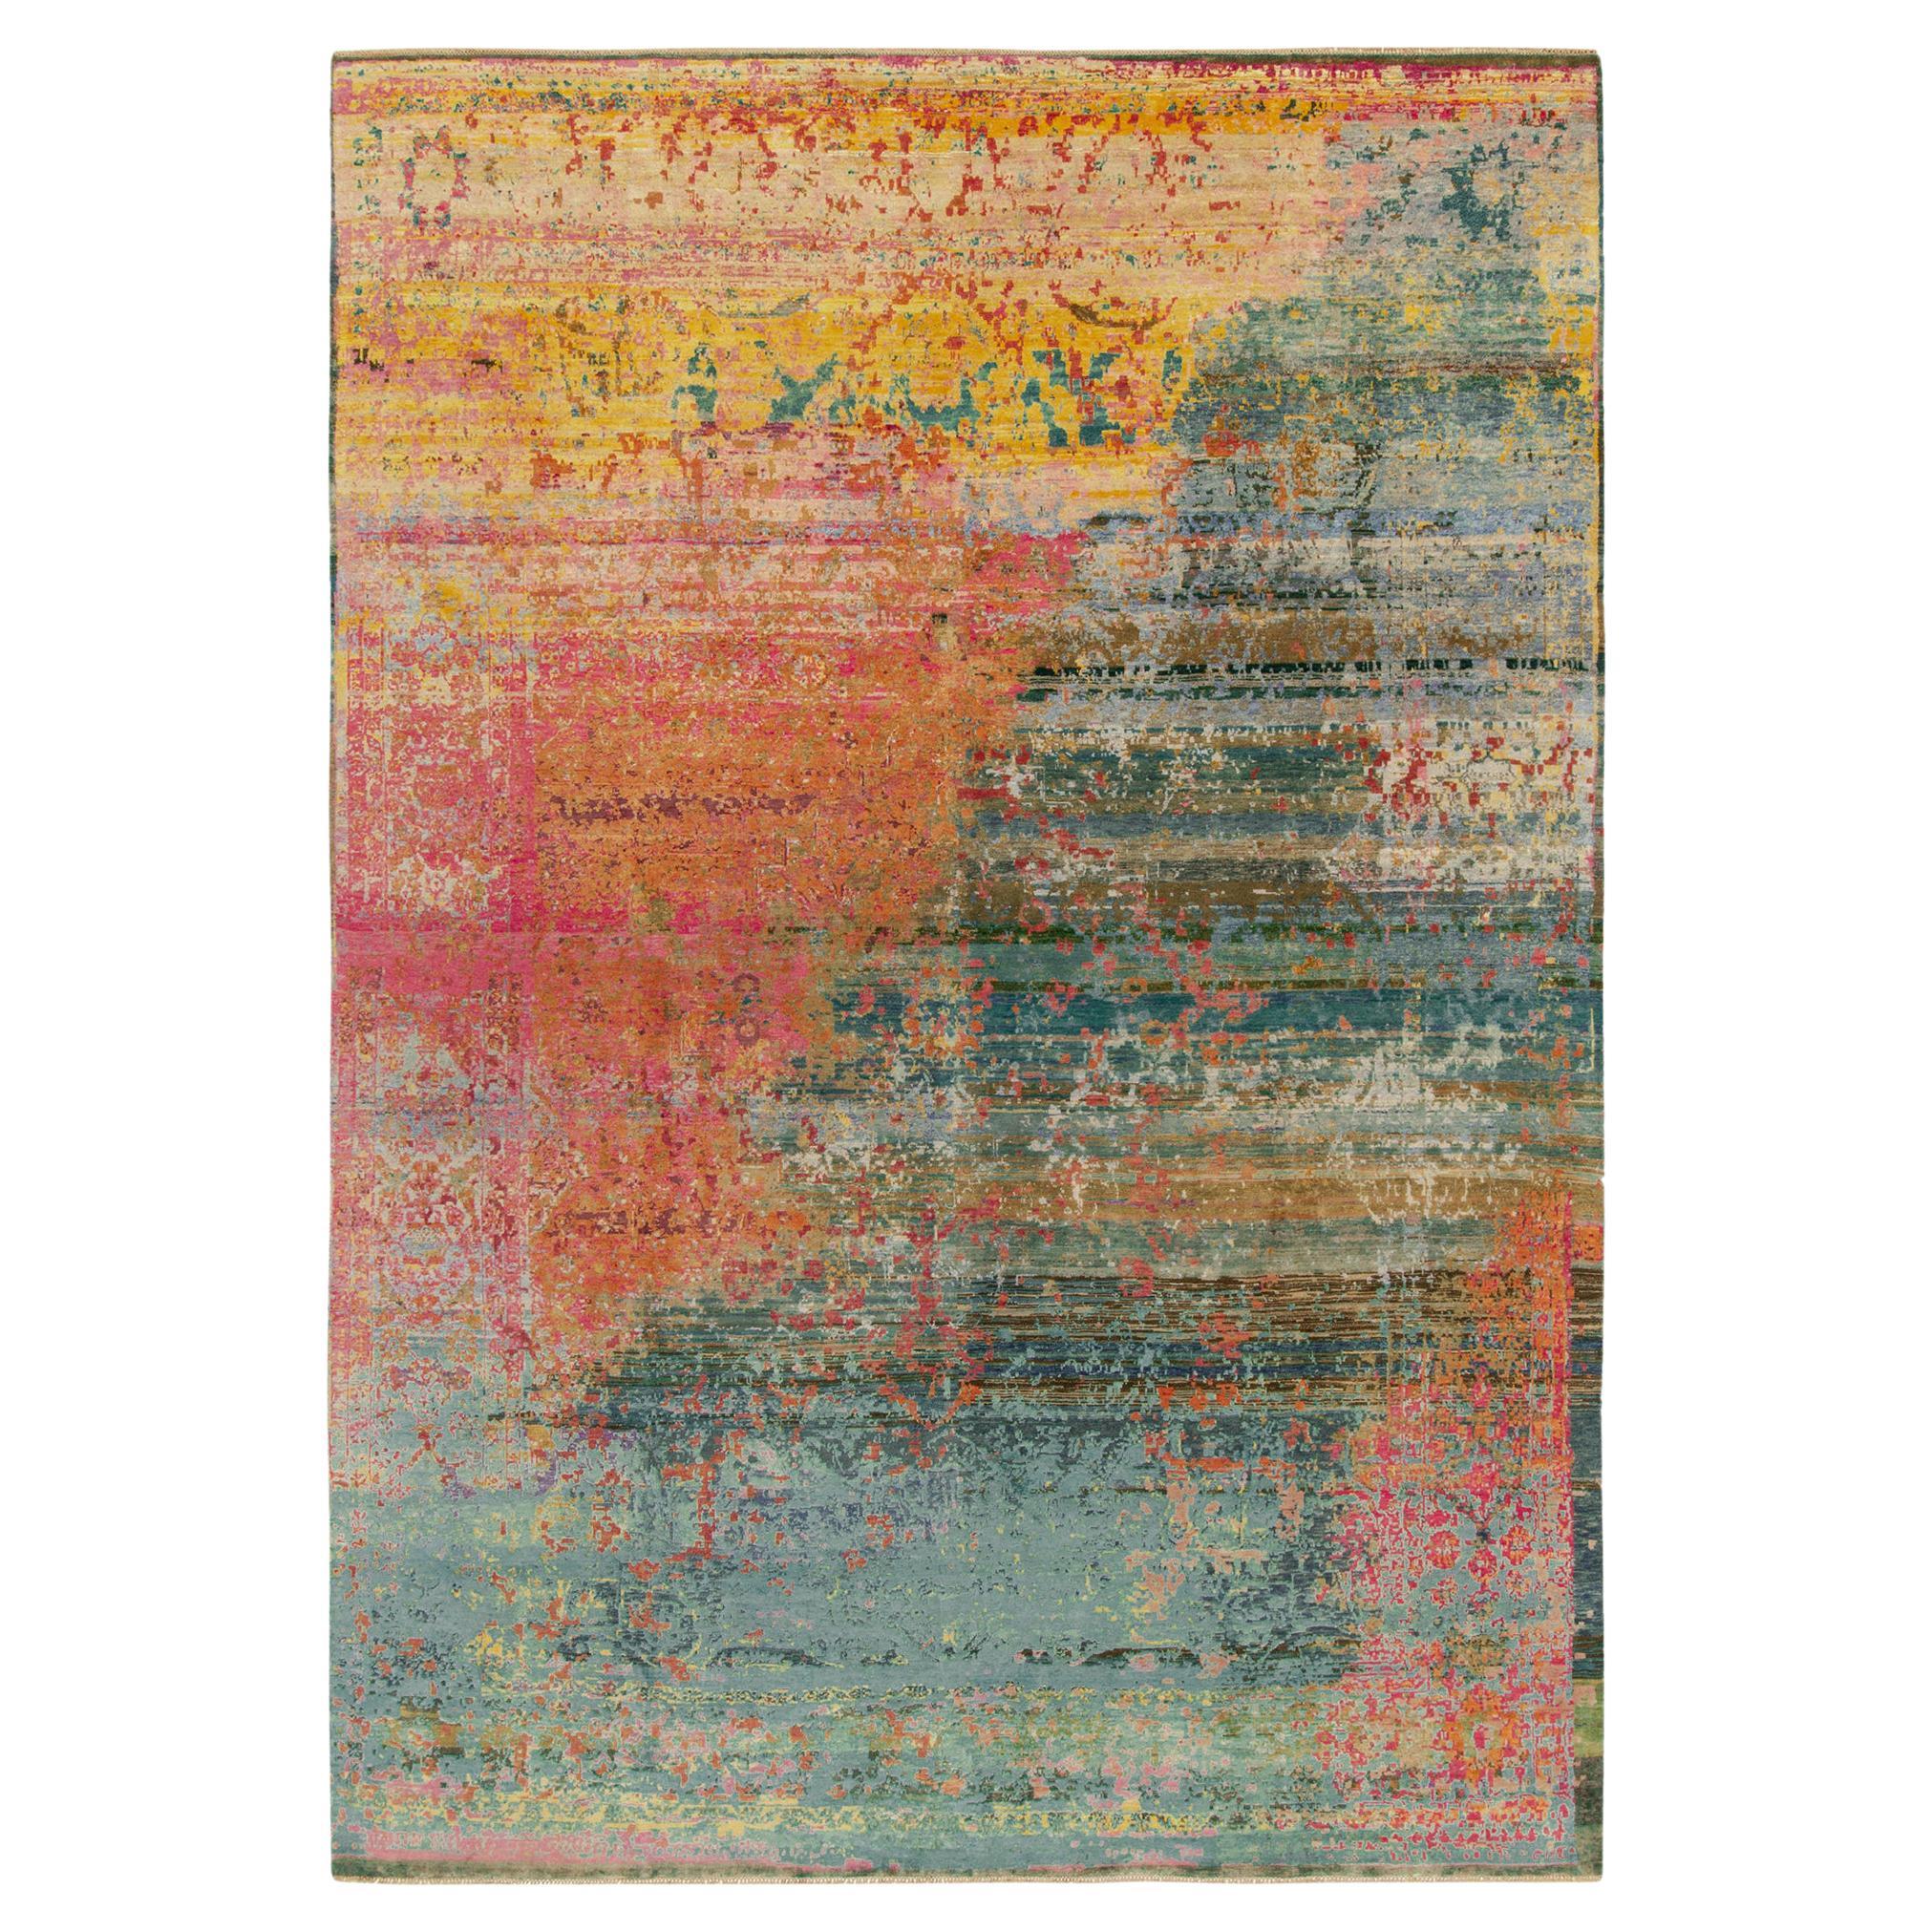 Zeitgenössischer abstrakter Teppich & Kelim-Teppich in Rosa, Blau mit buntem Muster